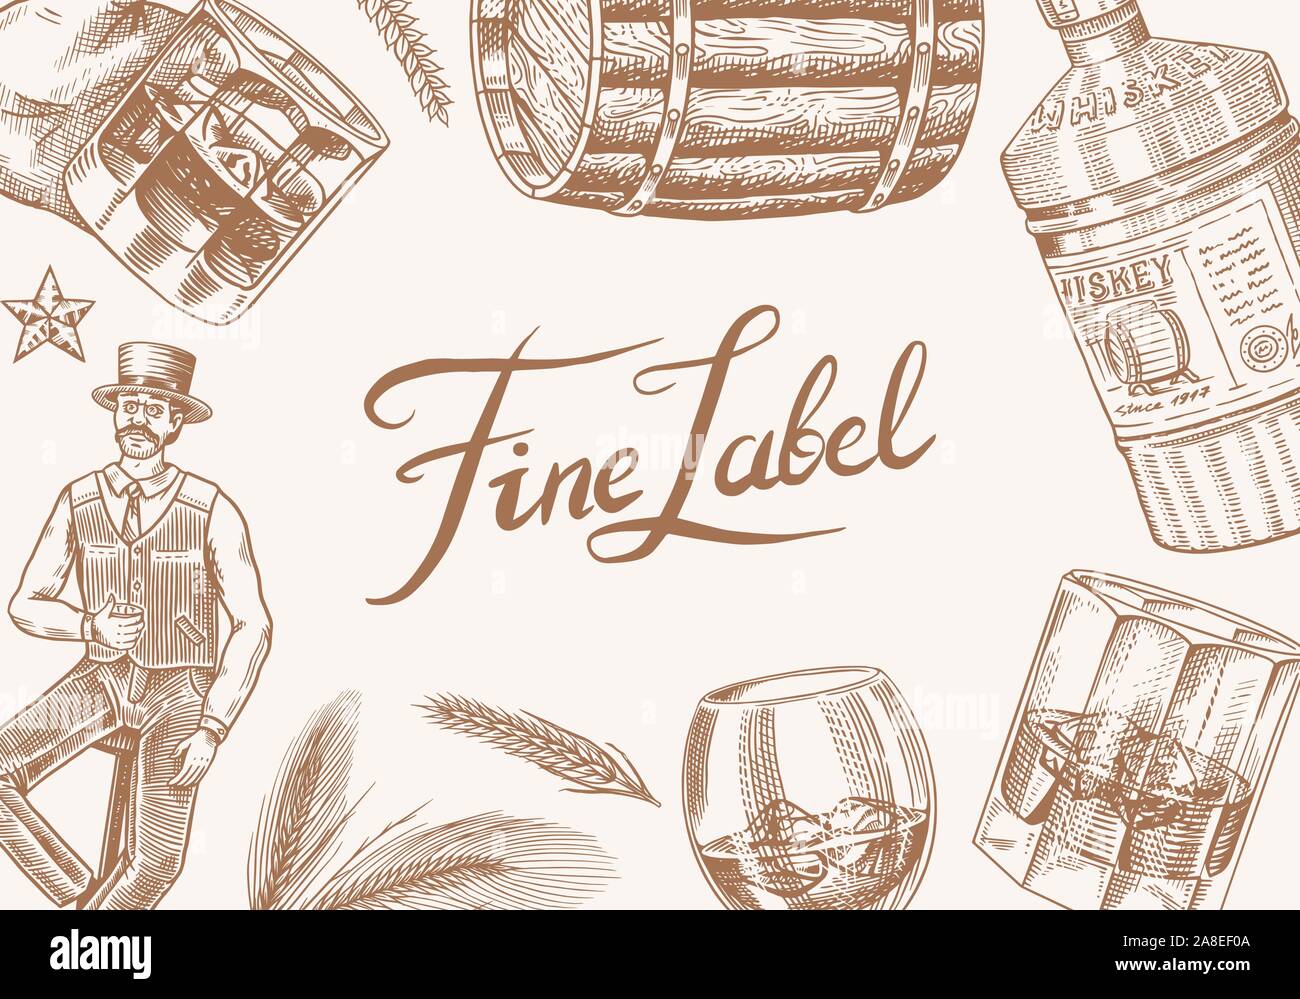 Vintage Whiskey Banner. Starken Alkohol Hintergrund. Glas Flasche, Holzfass, Scotch und Bourbon, Weizen und Roggen, viktorianischer Mann, cheers Toast Stock Vektor